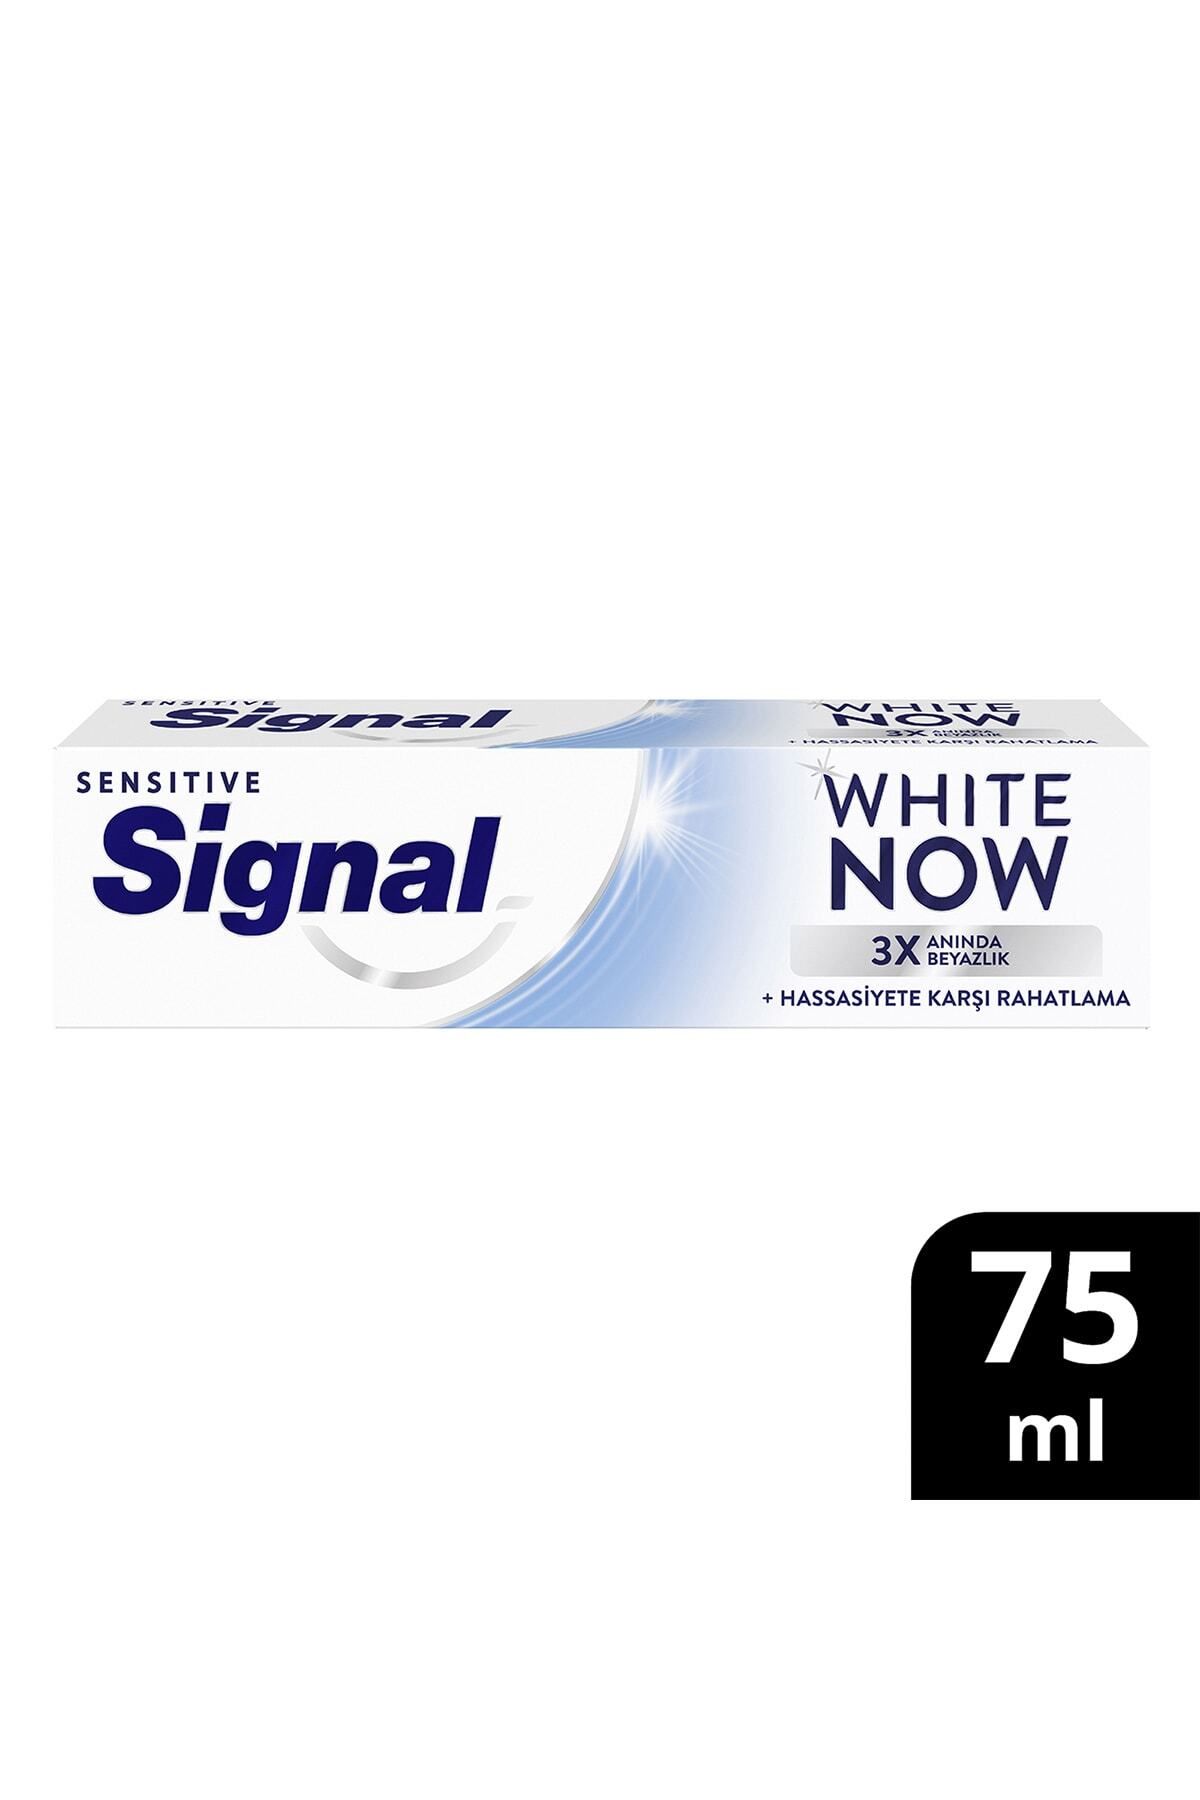 Signal Diş Macunu White Now Sensitive Anında 3 Kat Beyazlık 75 ML